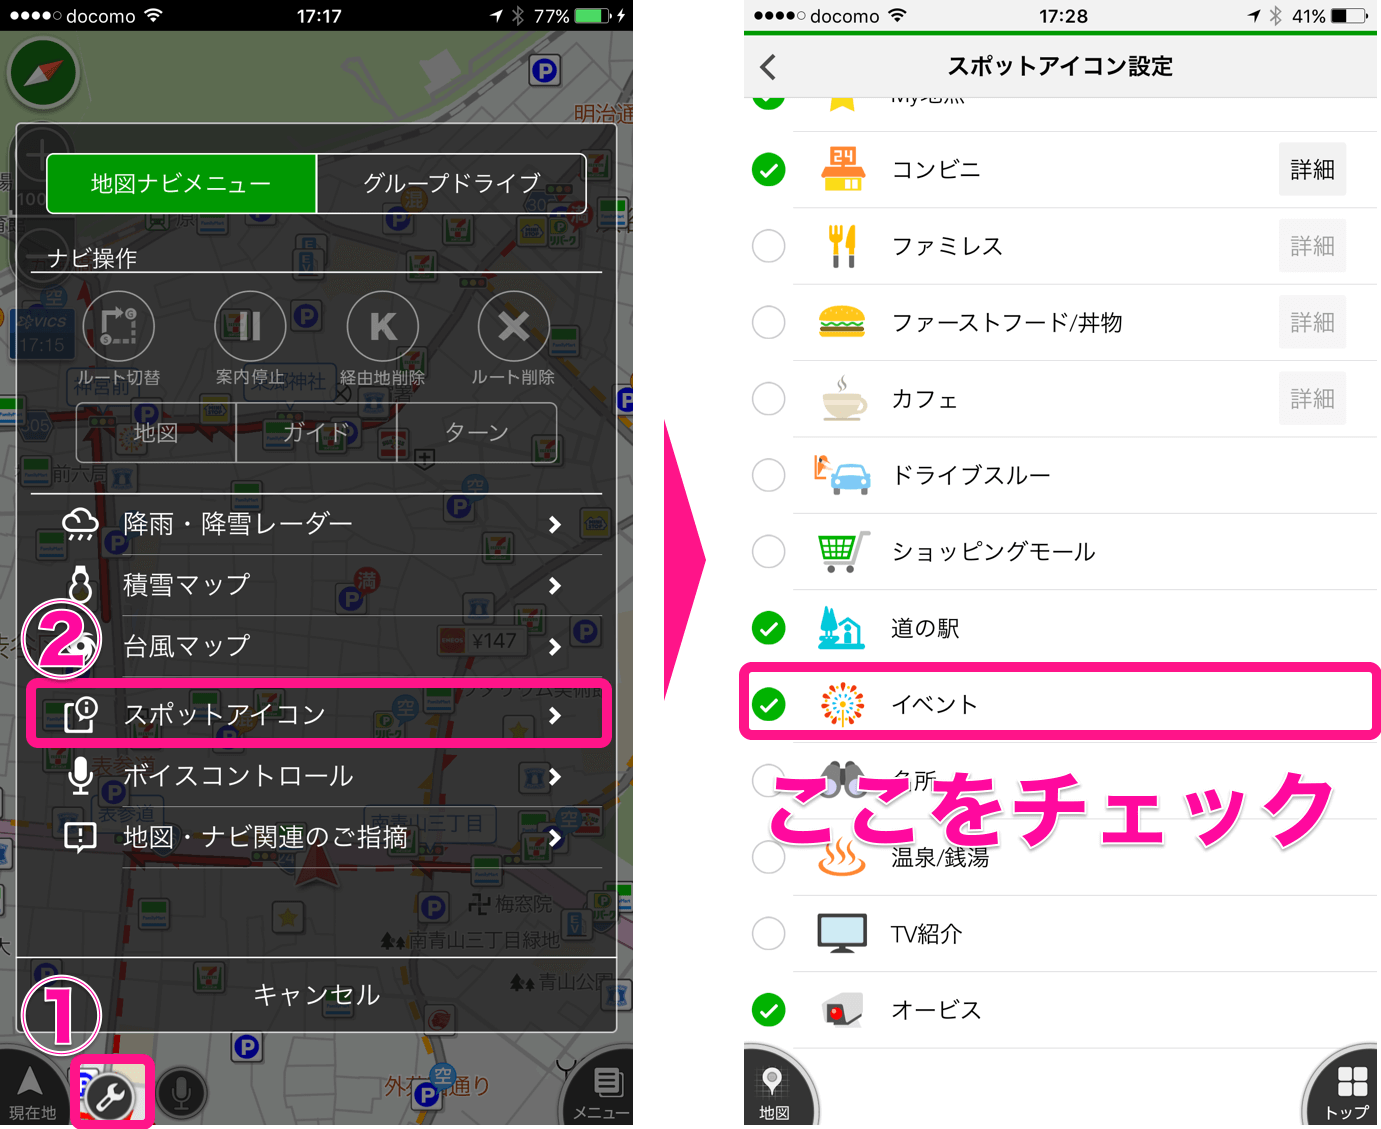 how_to_sakura_icon.png